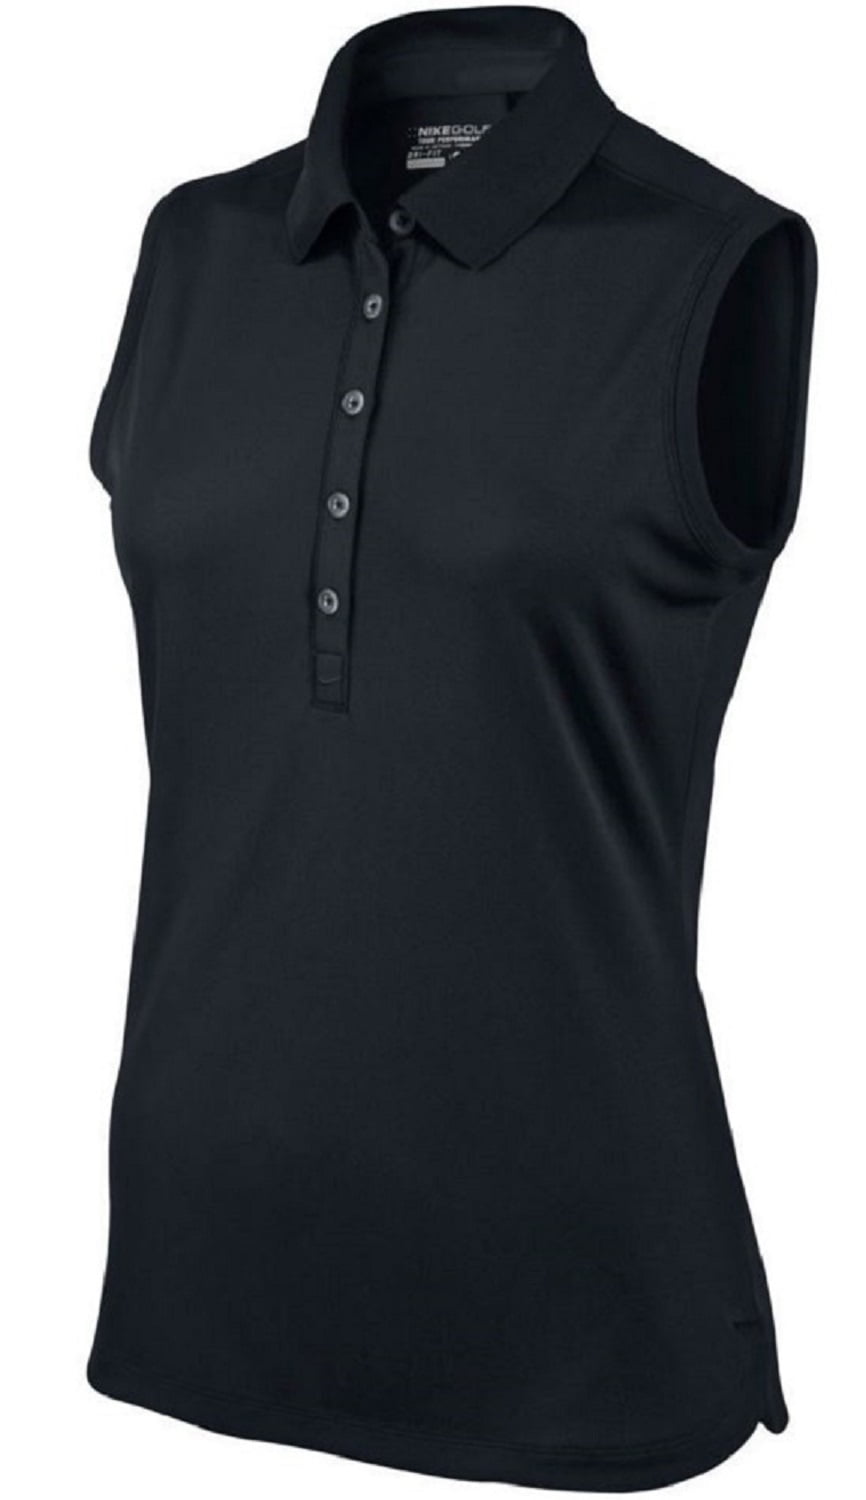 Nike Golf Tour Women's Dri-Fit Performance Sleeveless Polo (Black ...